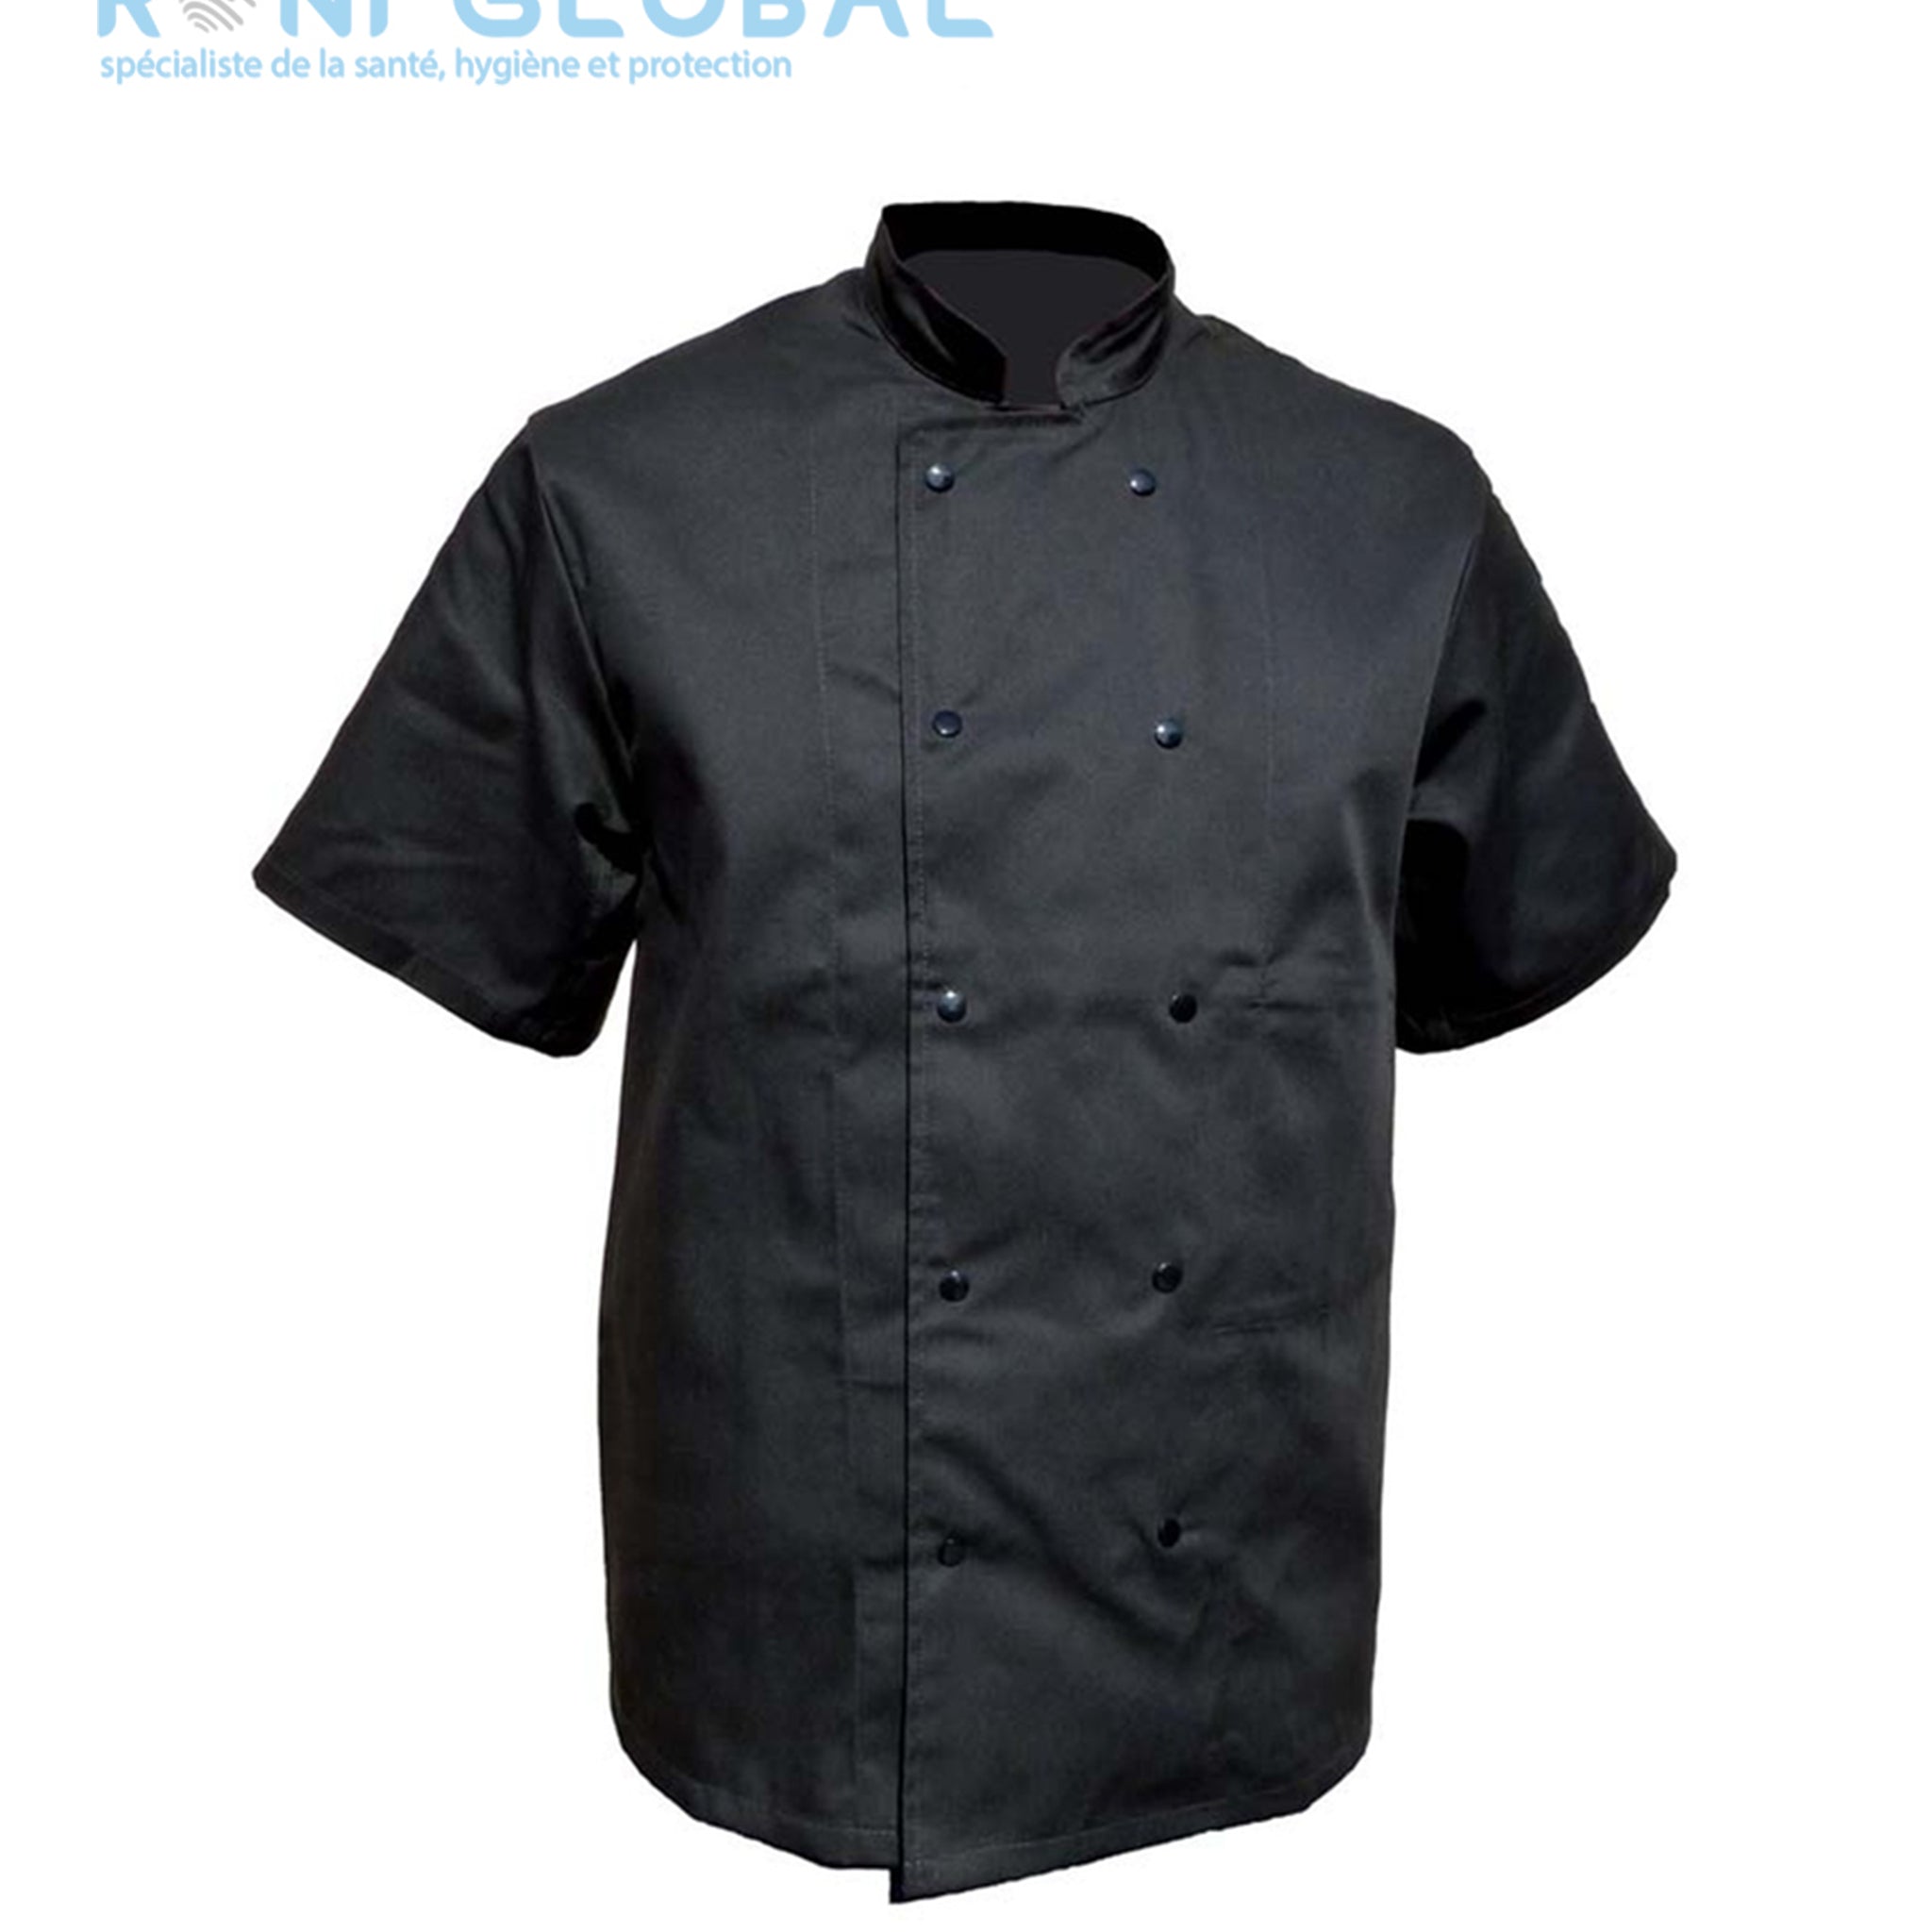 Veste de cuisine noire manches courtes, en coton/polyester 2 poches - VESTE CUISINE MC P/C NOIR PRESSIONS PBV